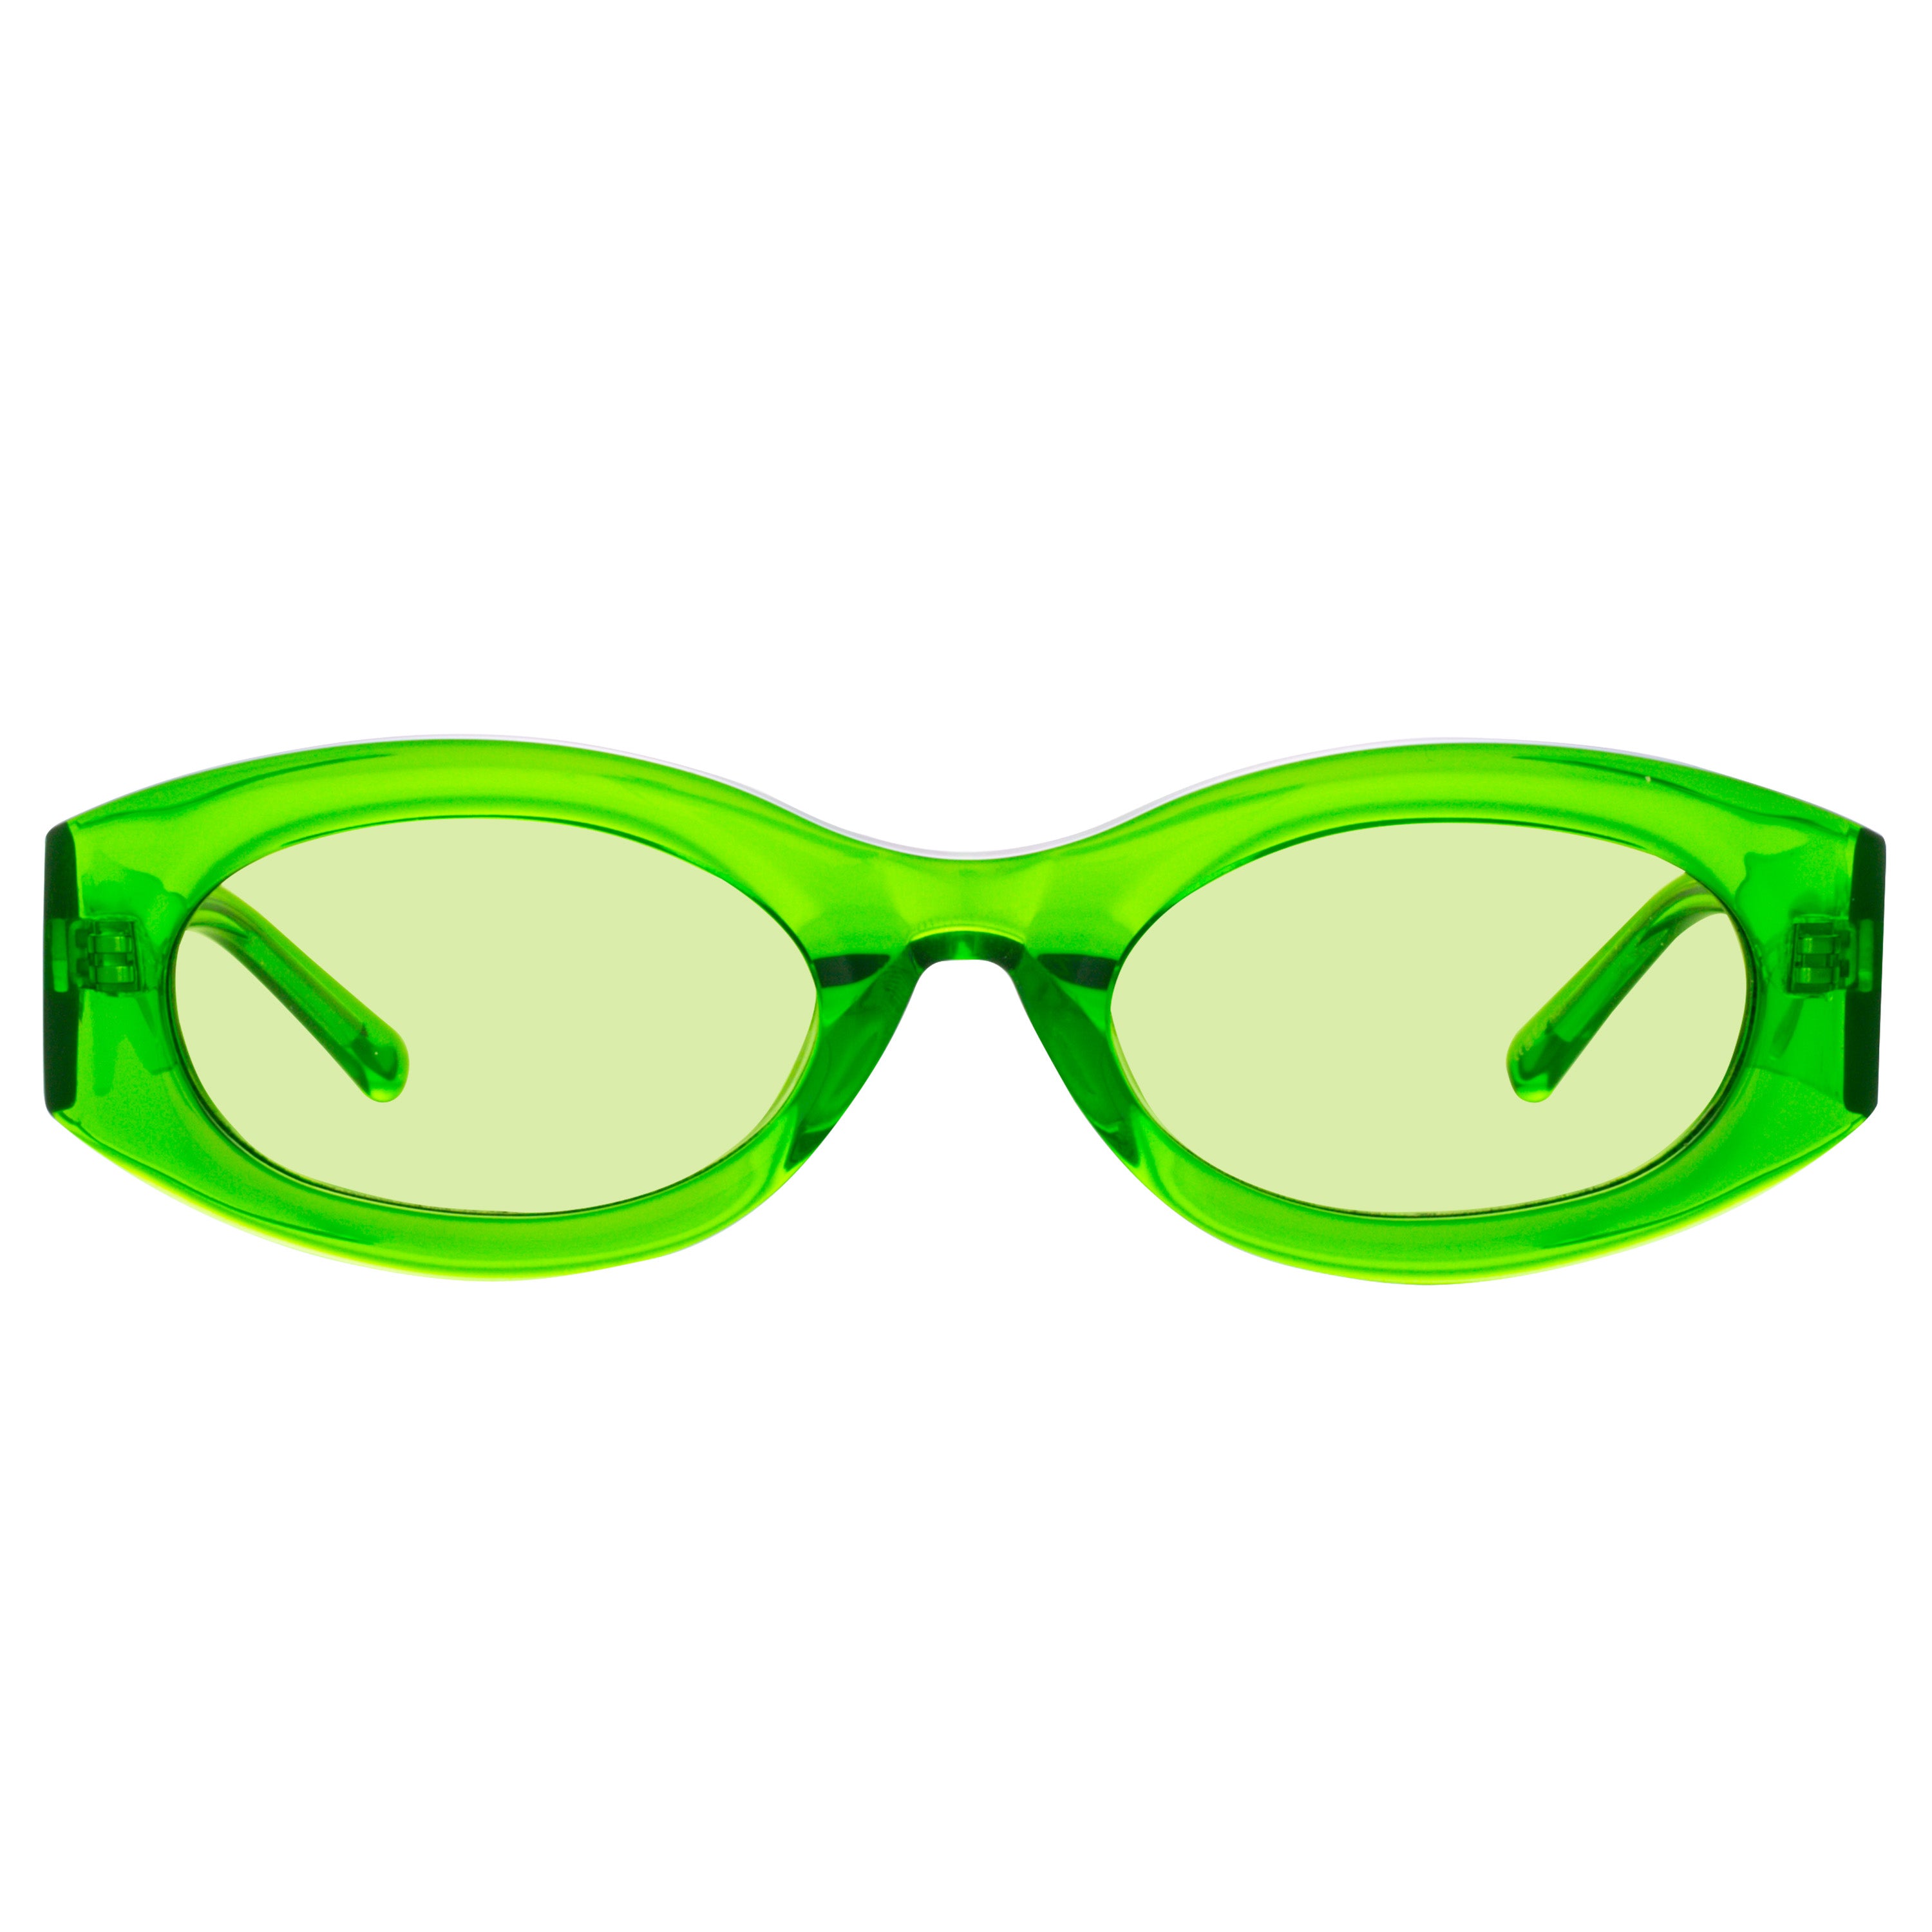 The Attico Berta Oval Sunglasses in Green